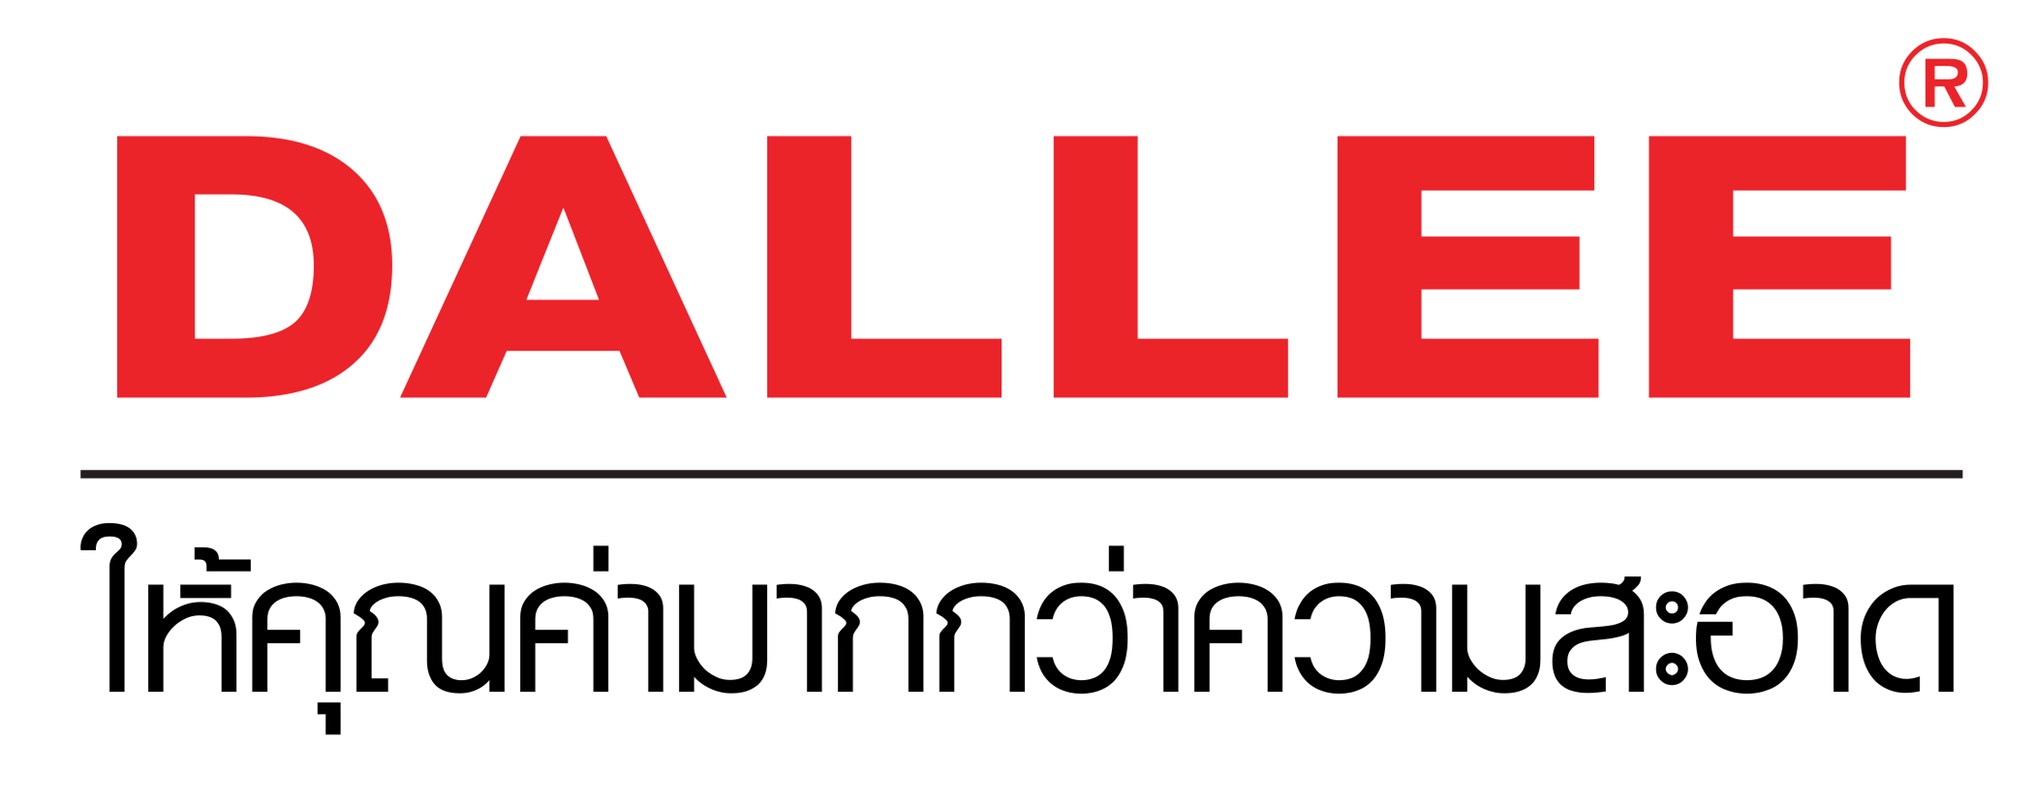 Dalleeclean Thailand